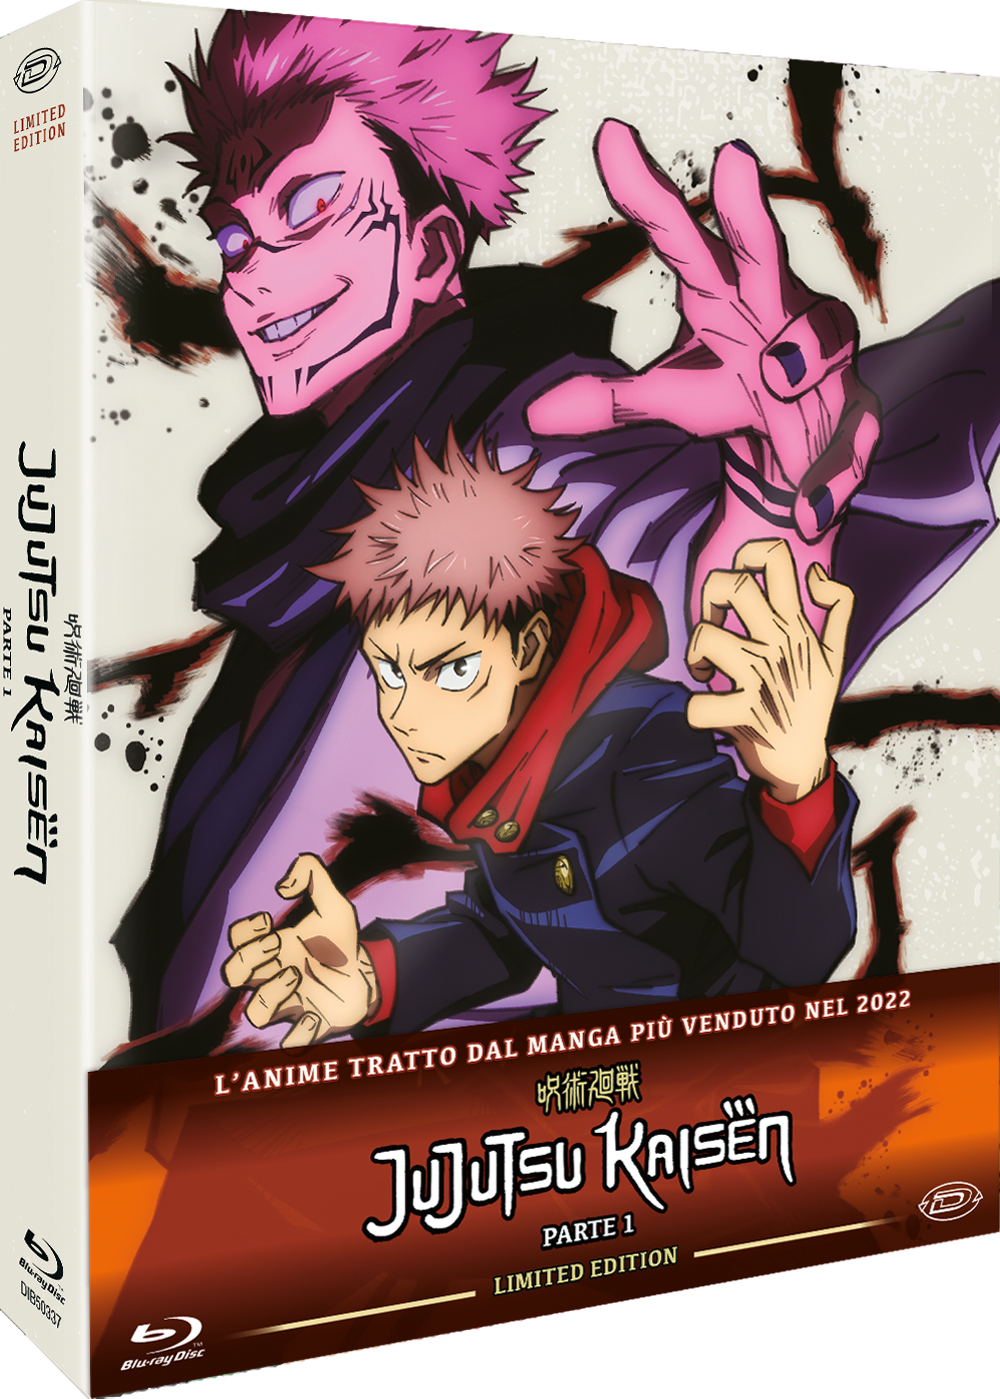 Blu-Ray Jujutsu Kaisen - Limited Edition Box-Set Vol 01 (Eps.01-13) (3 Blu-Ray) NUOVO SIGILLATO, EDIZIONE DEL 31/05/2023 SUBITO DISPONIBILE